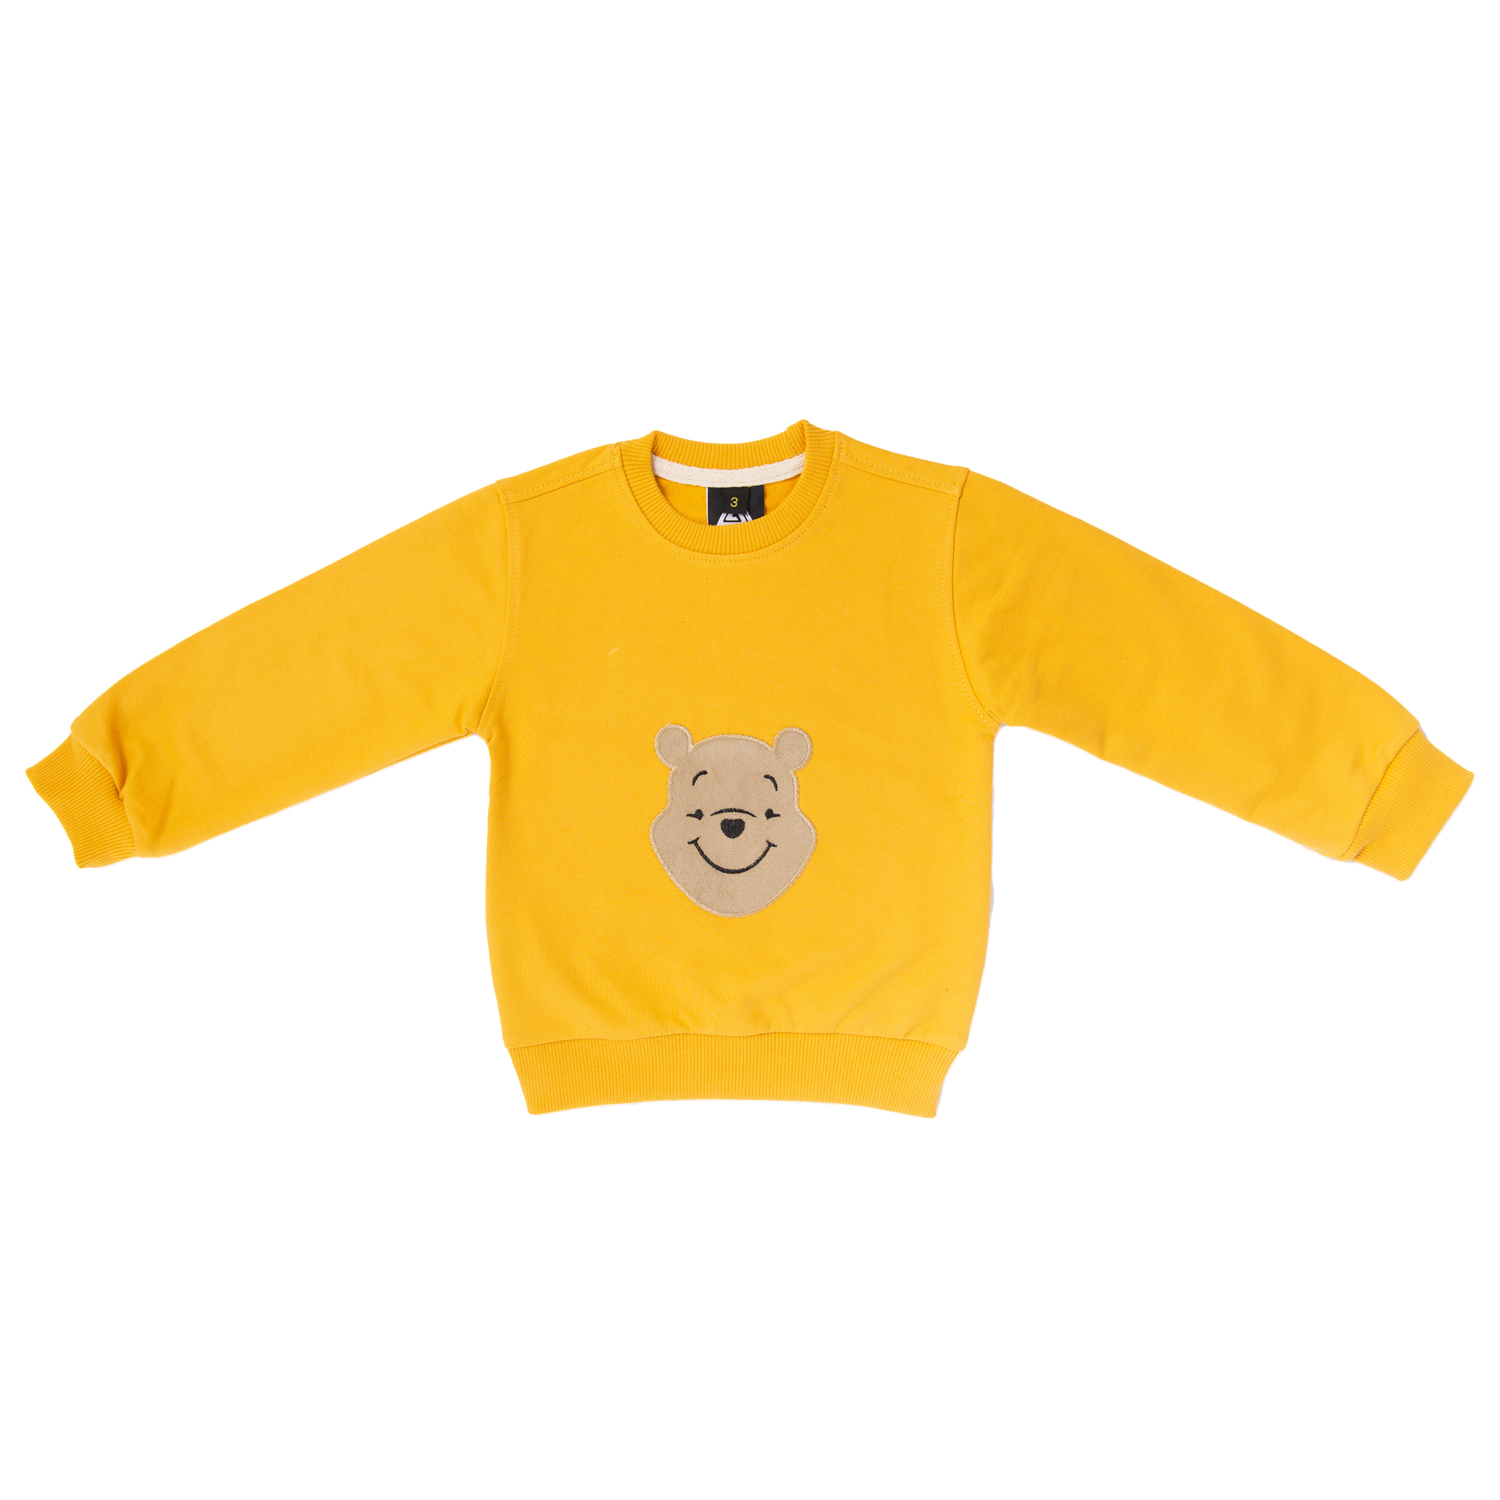 سویشرت بچگانه وستیتی کد Pooh5